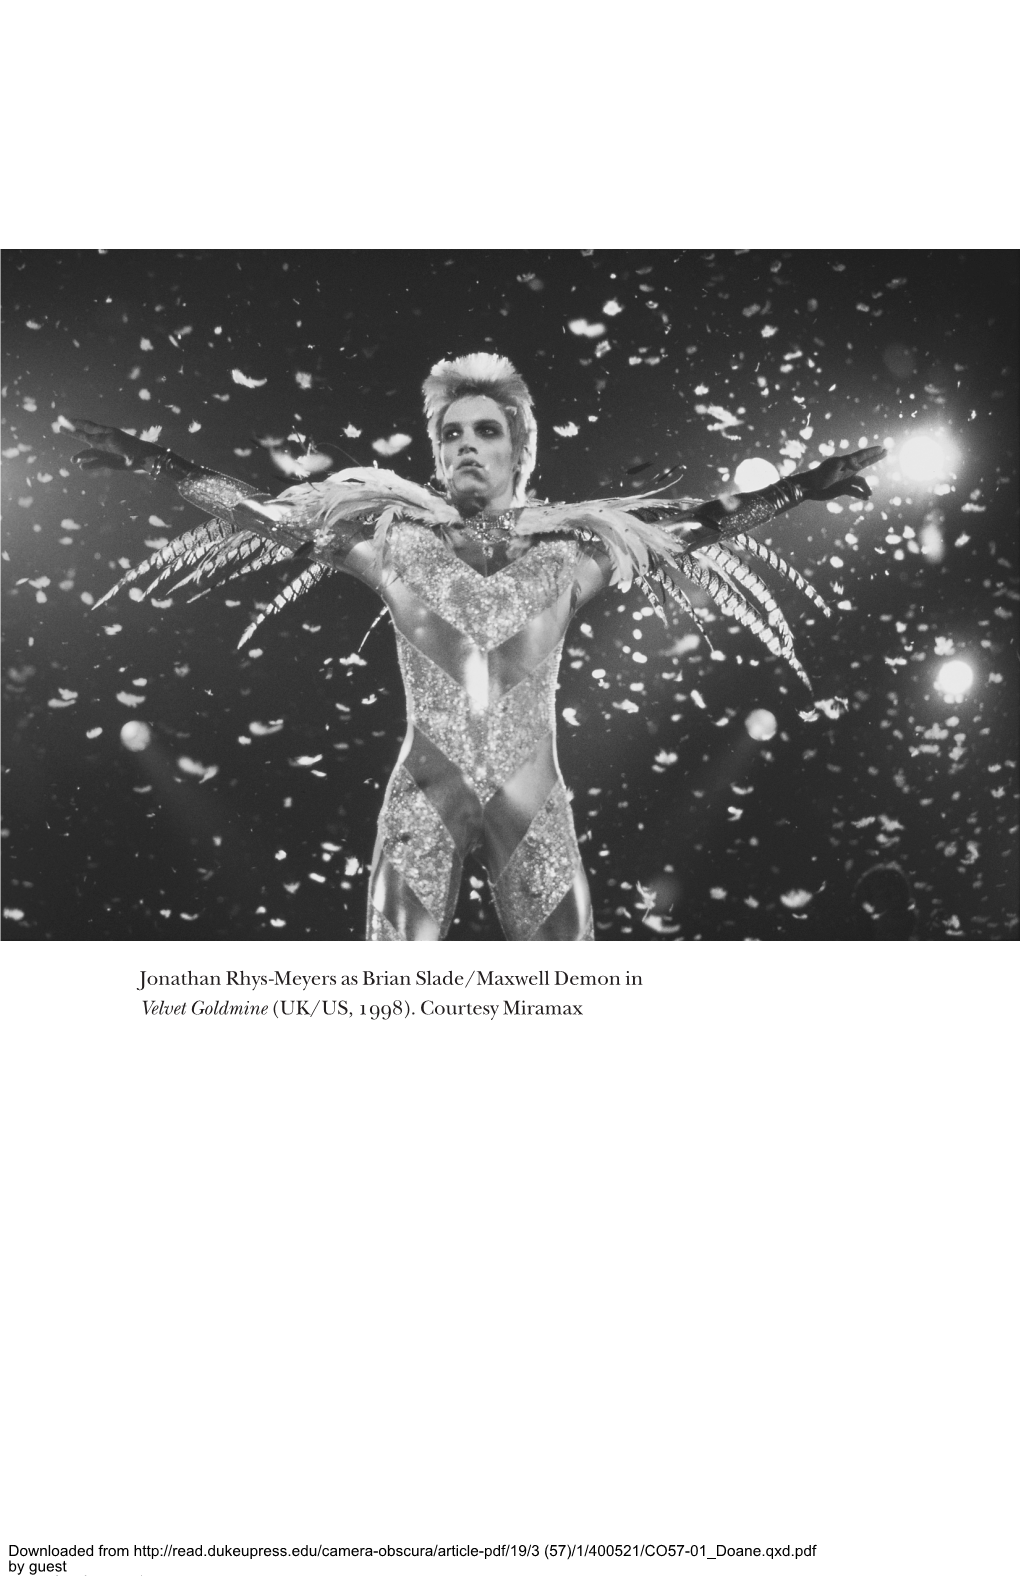 Jonathan Rhys-Meyers As Brian Slade/Maxwell Demon in Velvet Goldmine (UK/US, 1998)